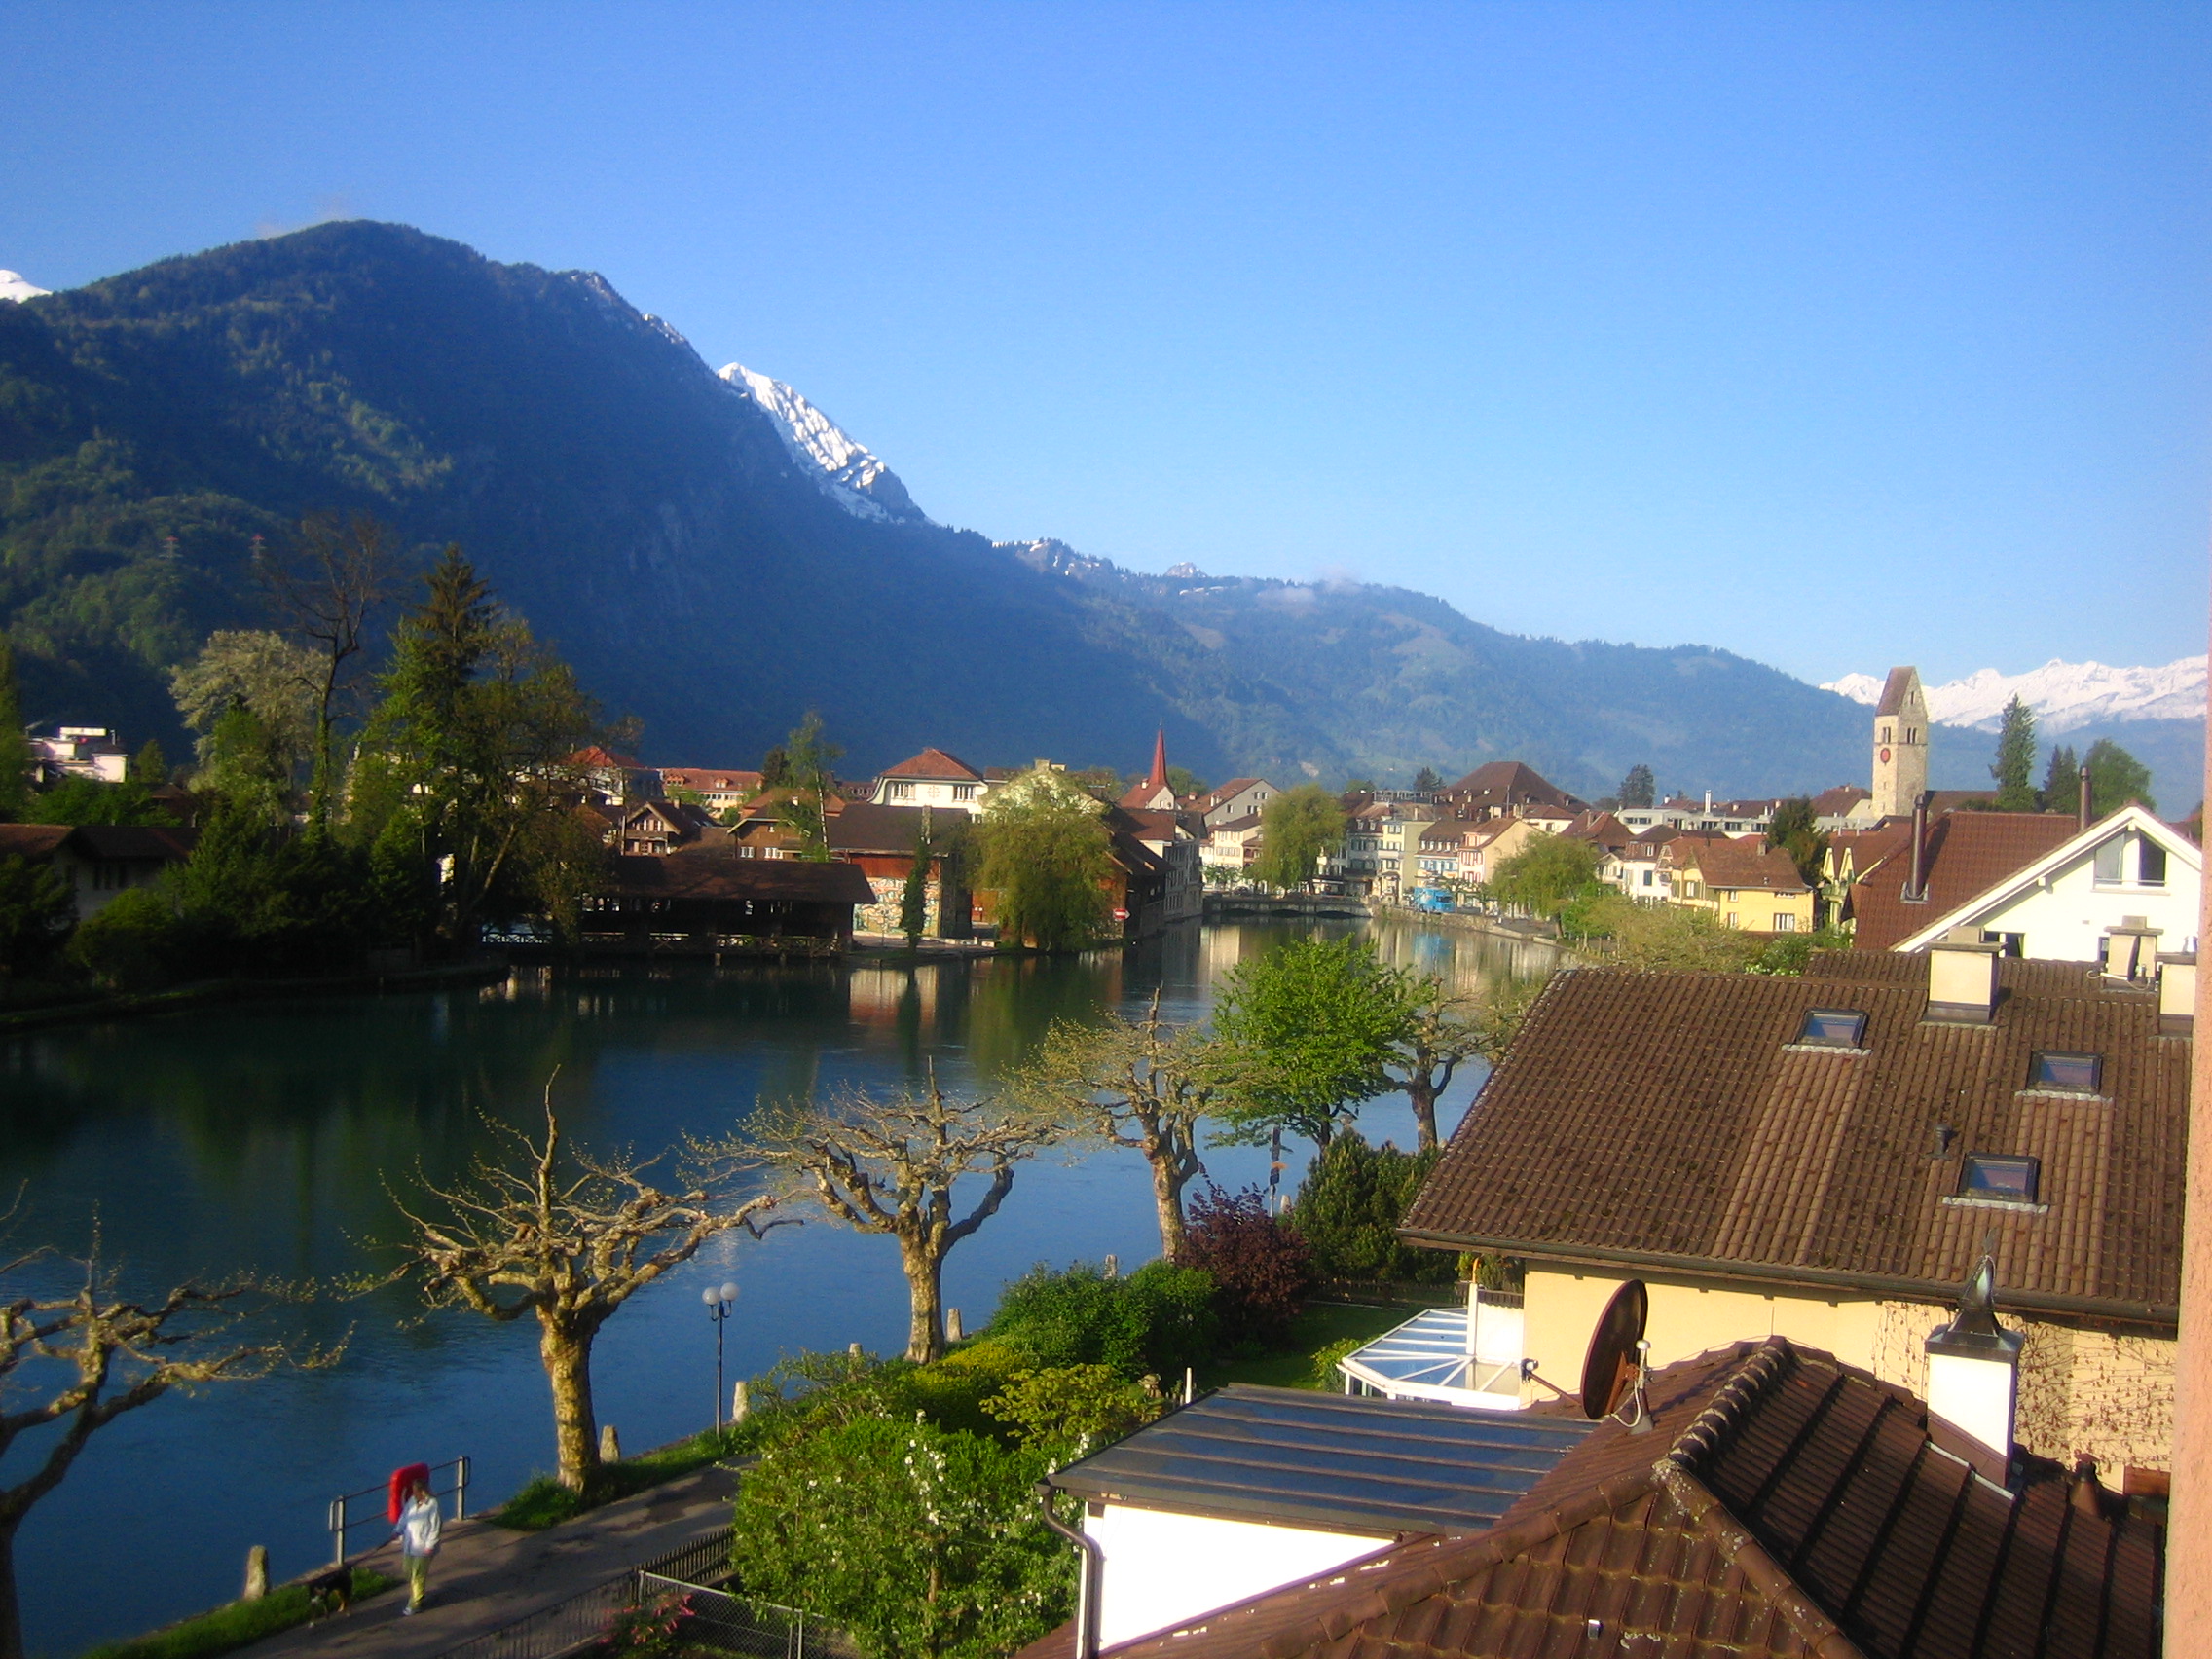 Швейцария маленькая страна. Озеро Цуг Швейцария. Интерлакен Швейцария. Interlaken в Швейцарии. Интерлакен Швейцария достопримечательности.